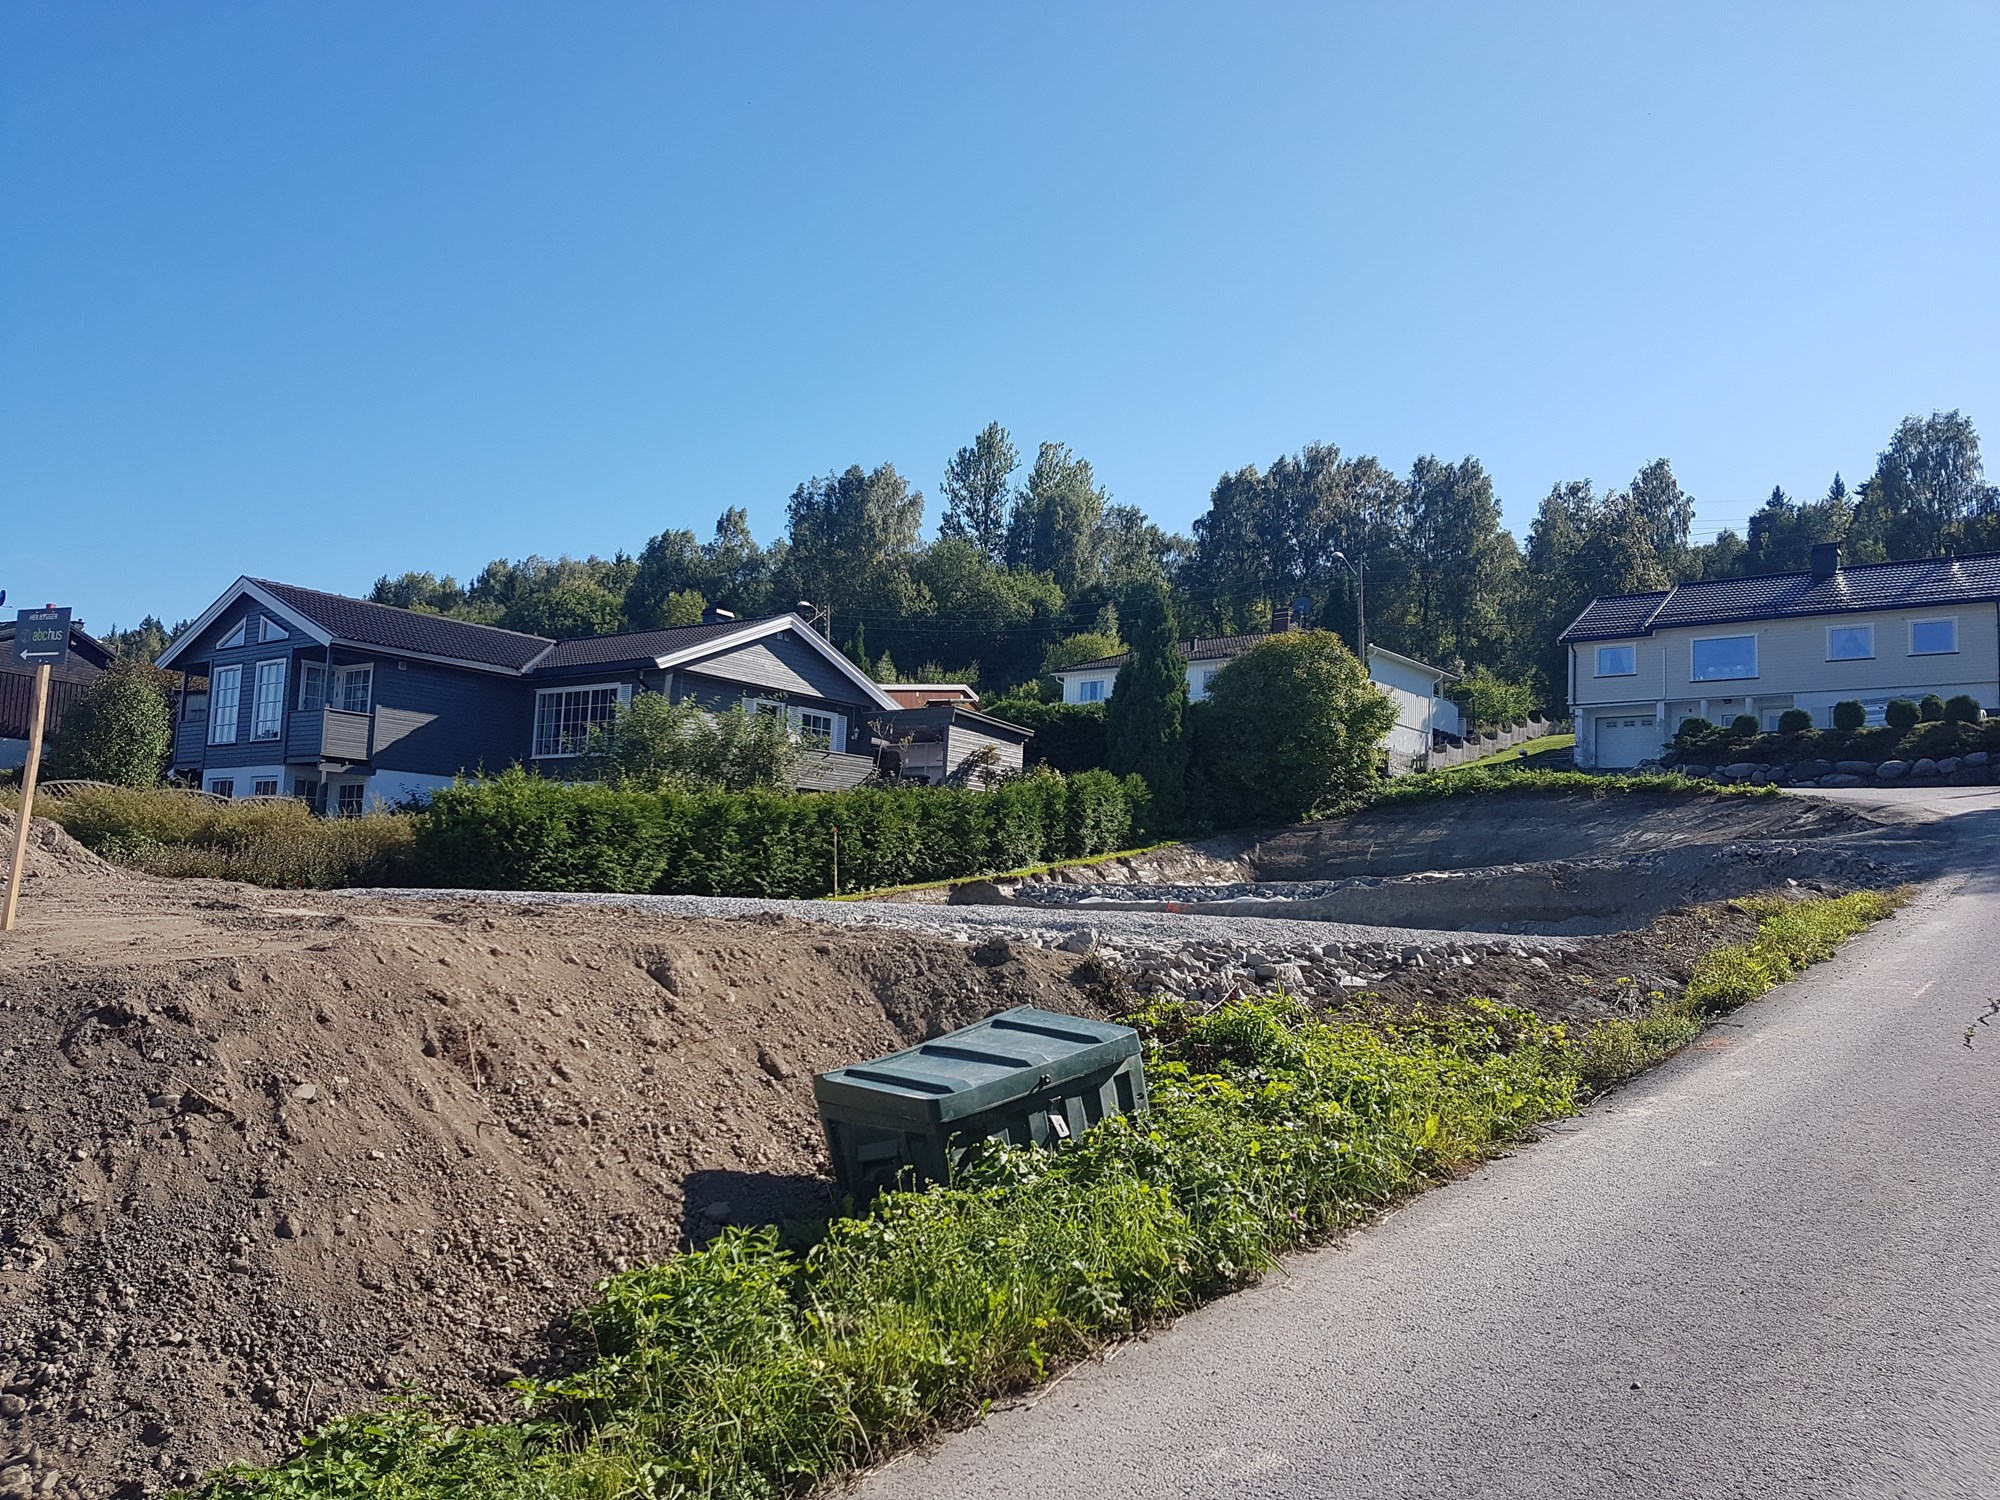 Bygger nytt hus: abchus Adele i Drammen - 20180902_150910.jpg - Michael Scofield